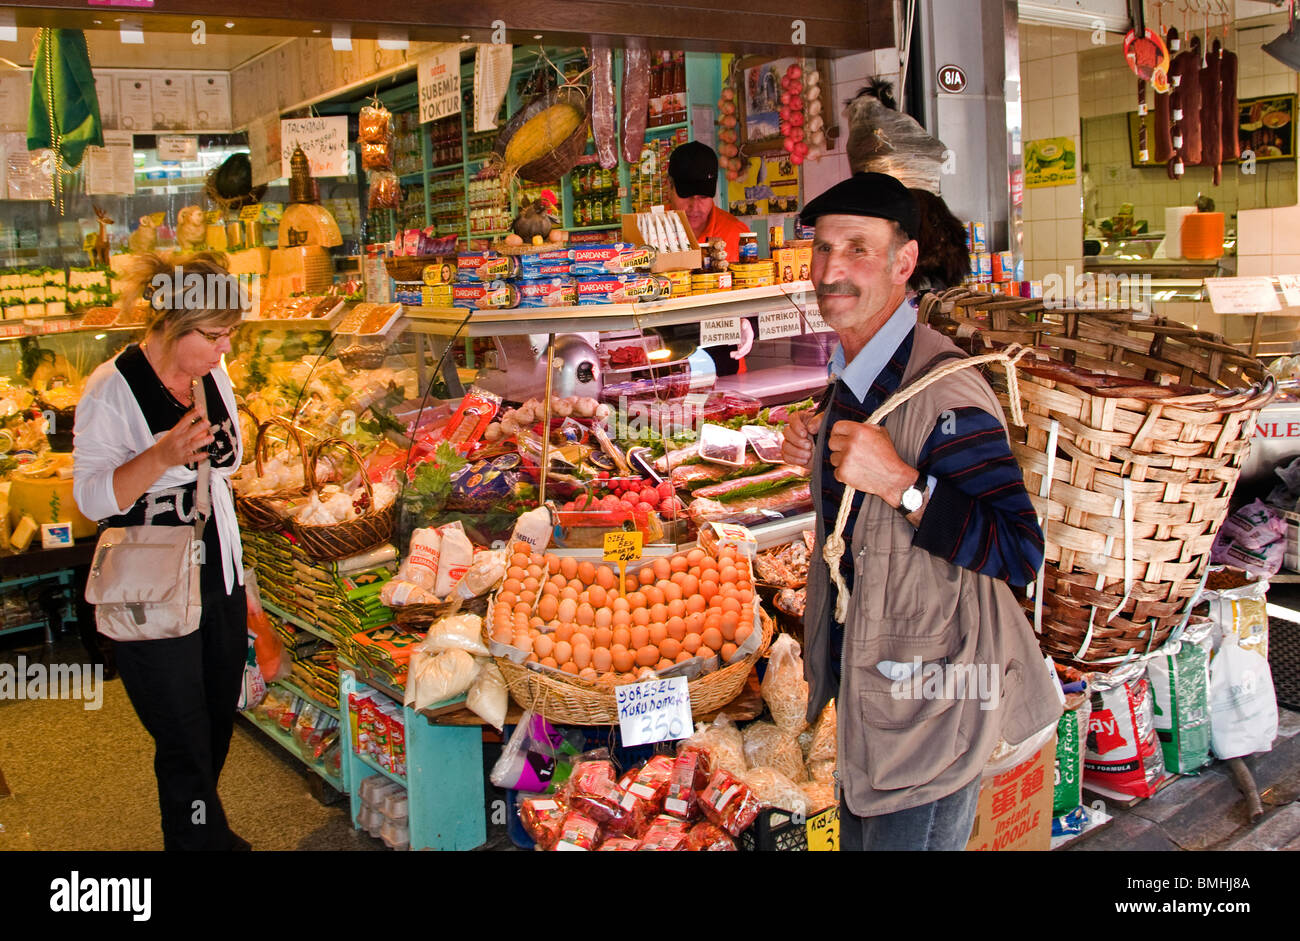 Kadikoy Istanbul Turkey market grocer grocery porter Stock Photo